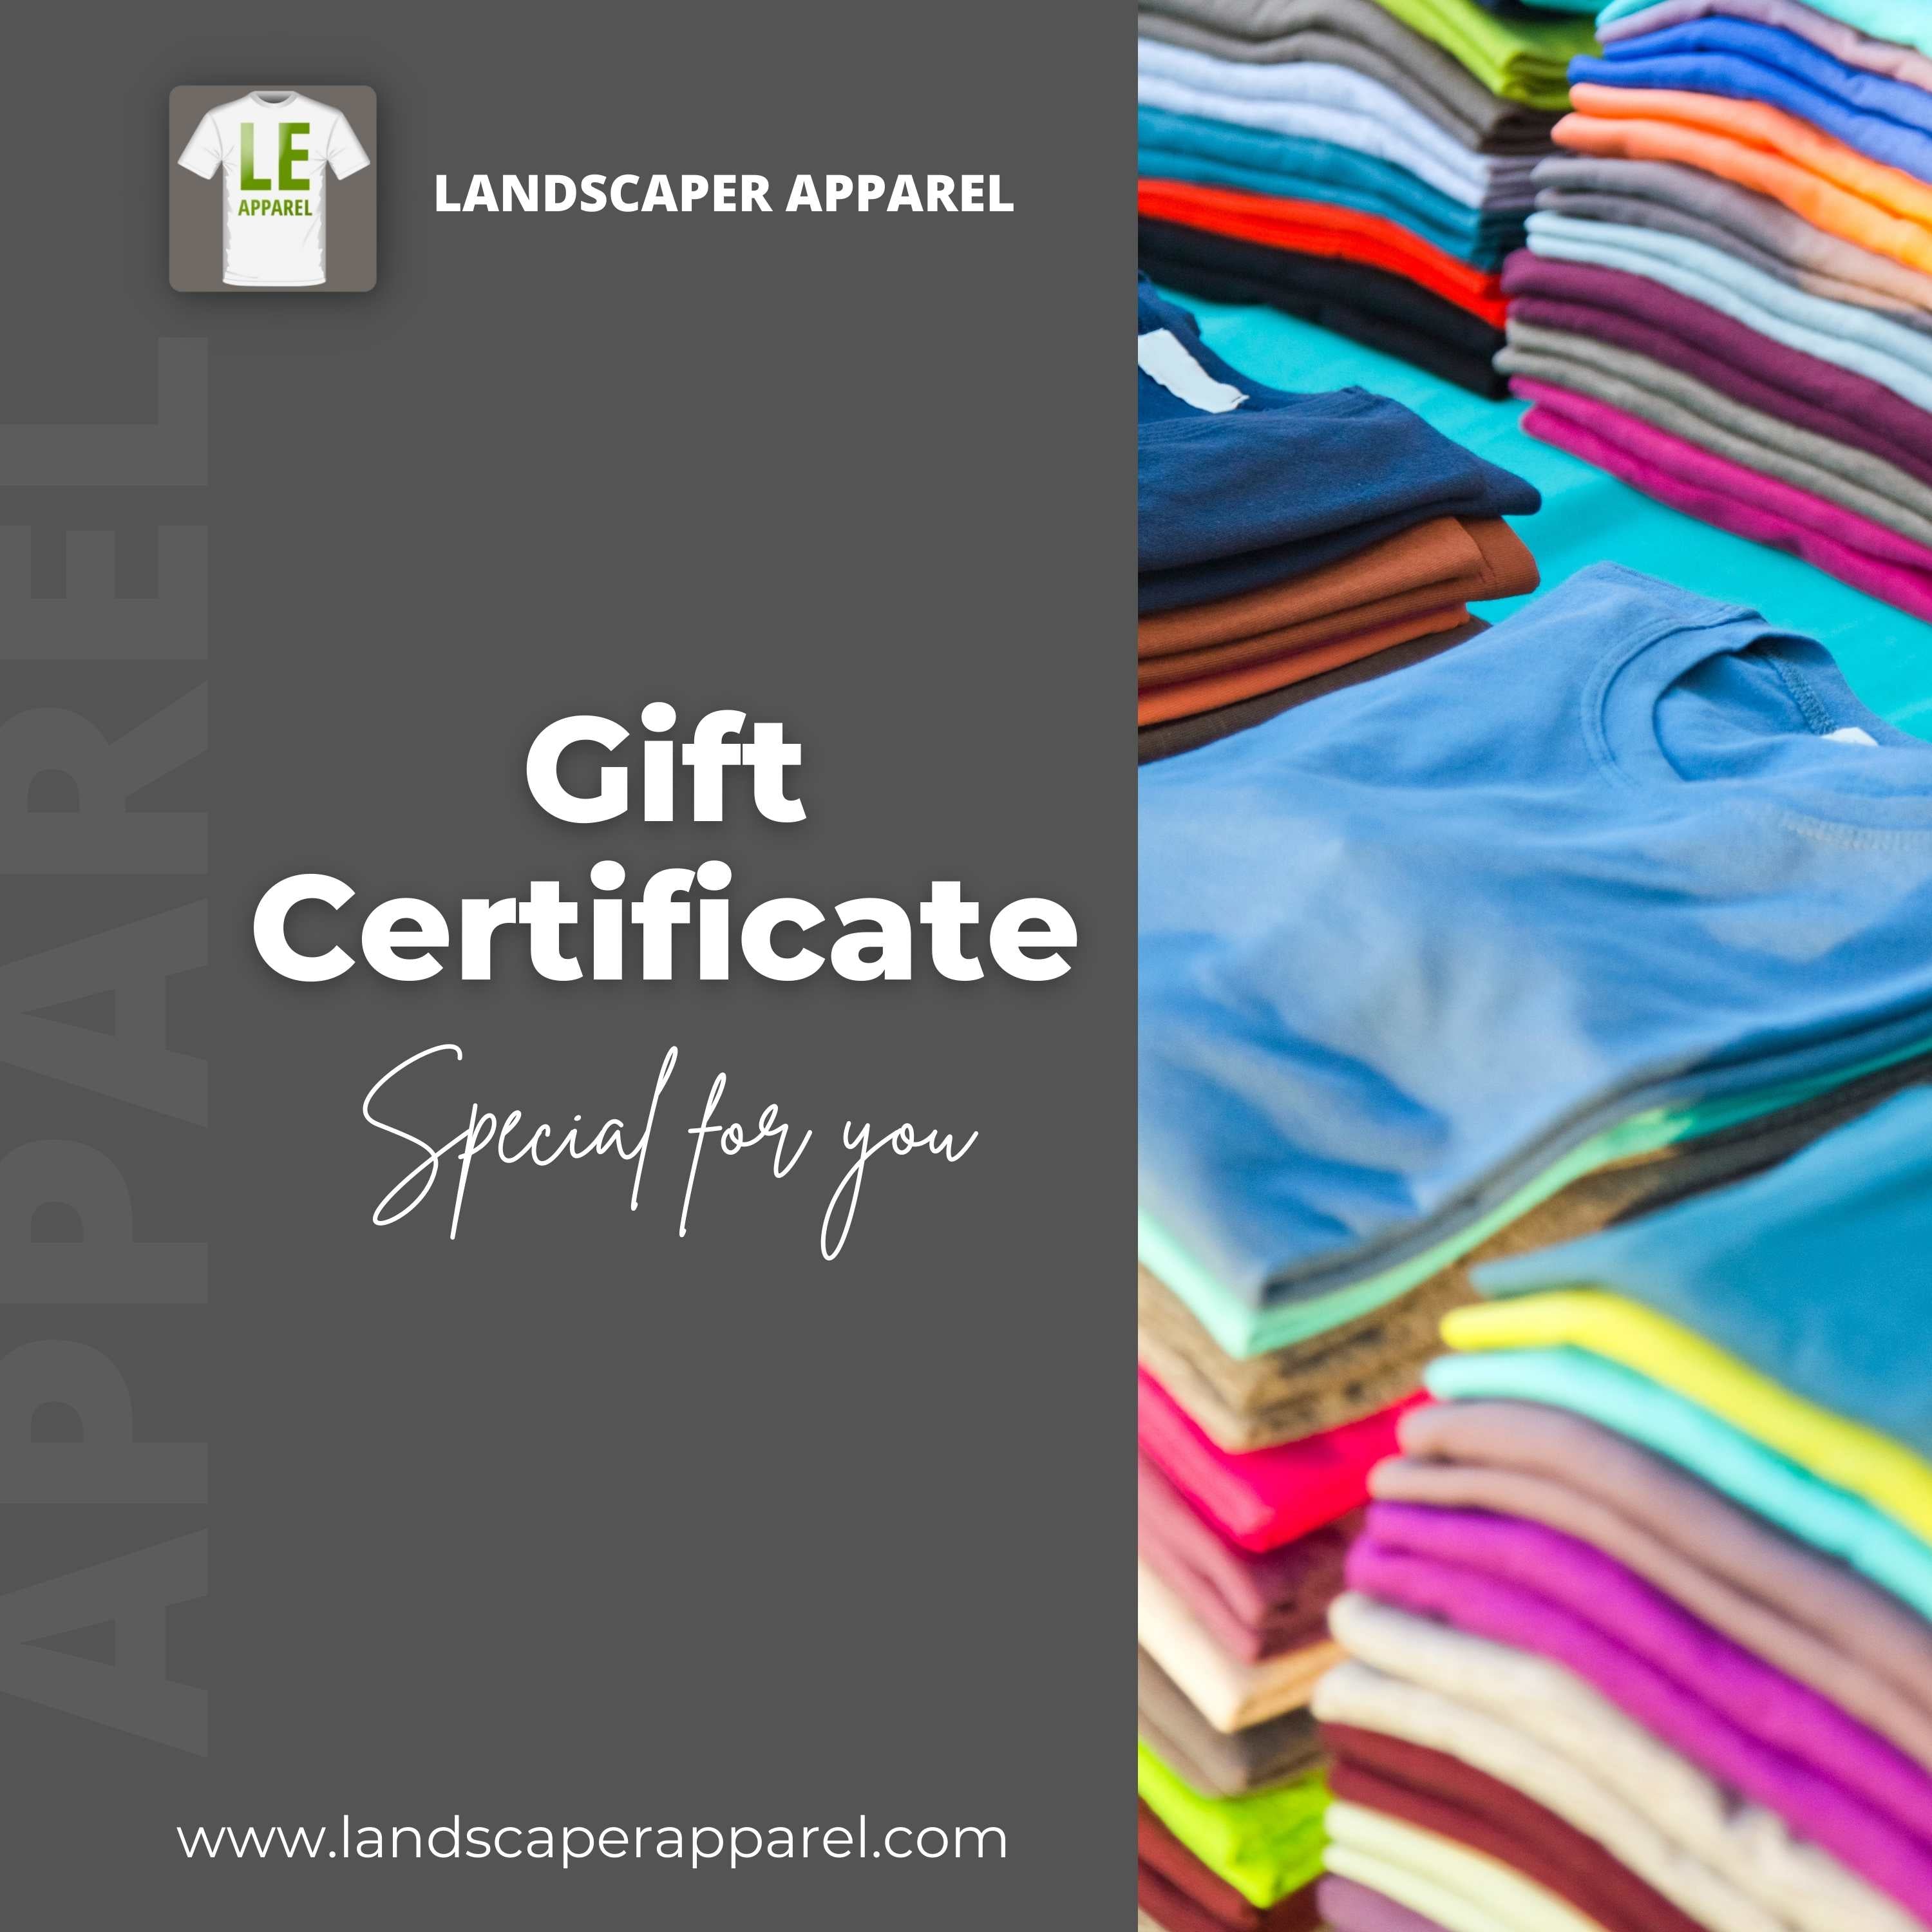 Landscaper Apparel Gift Certificate